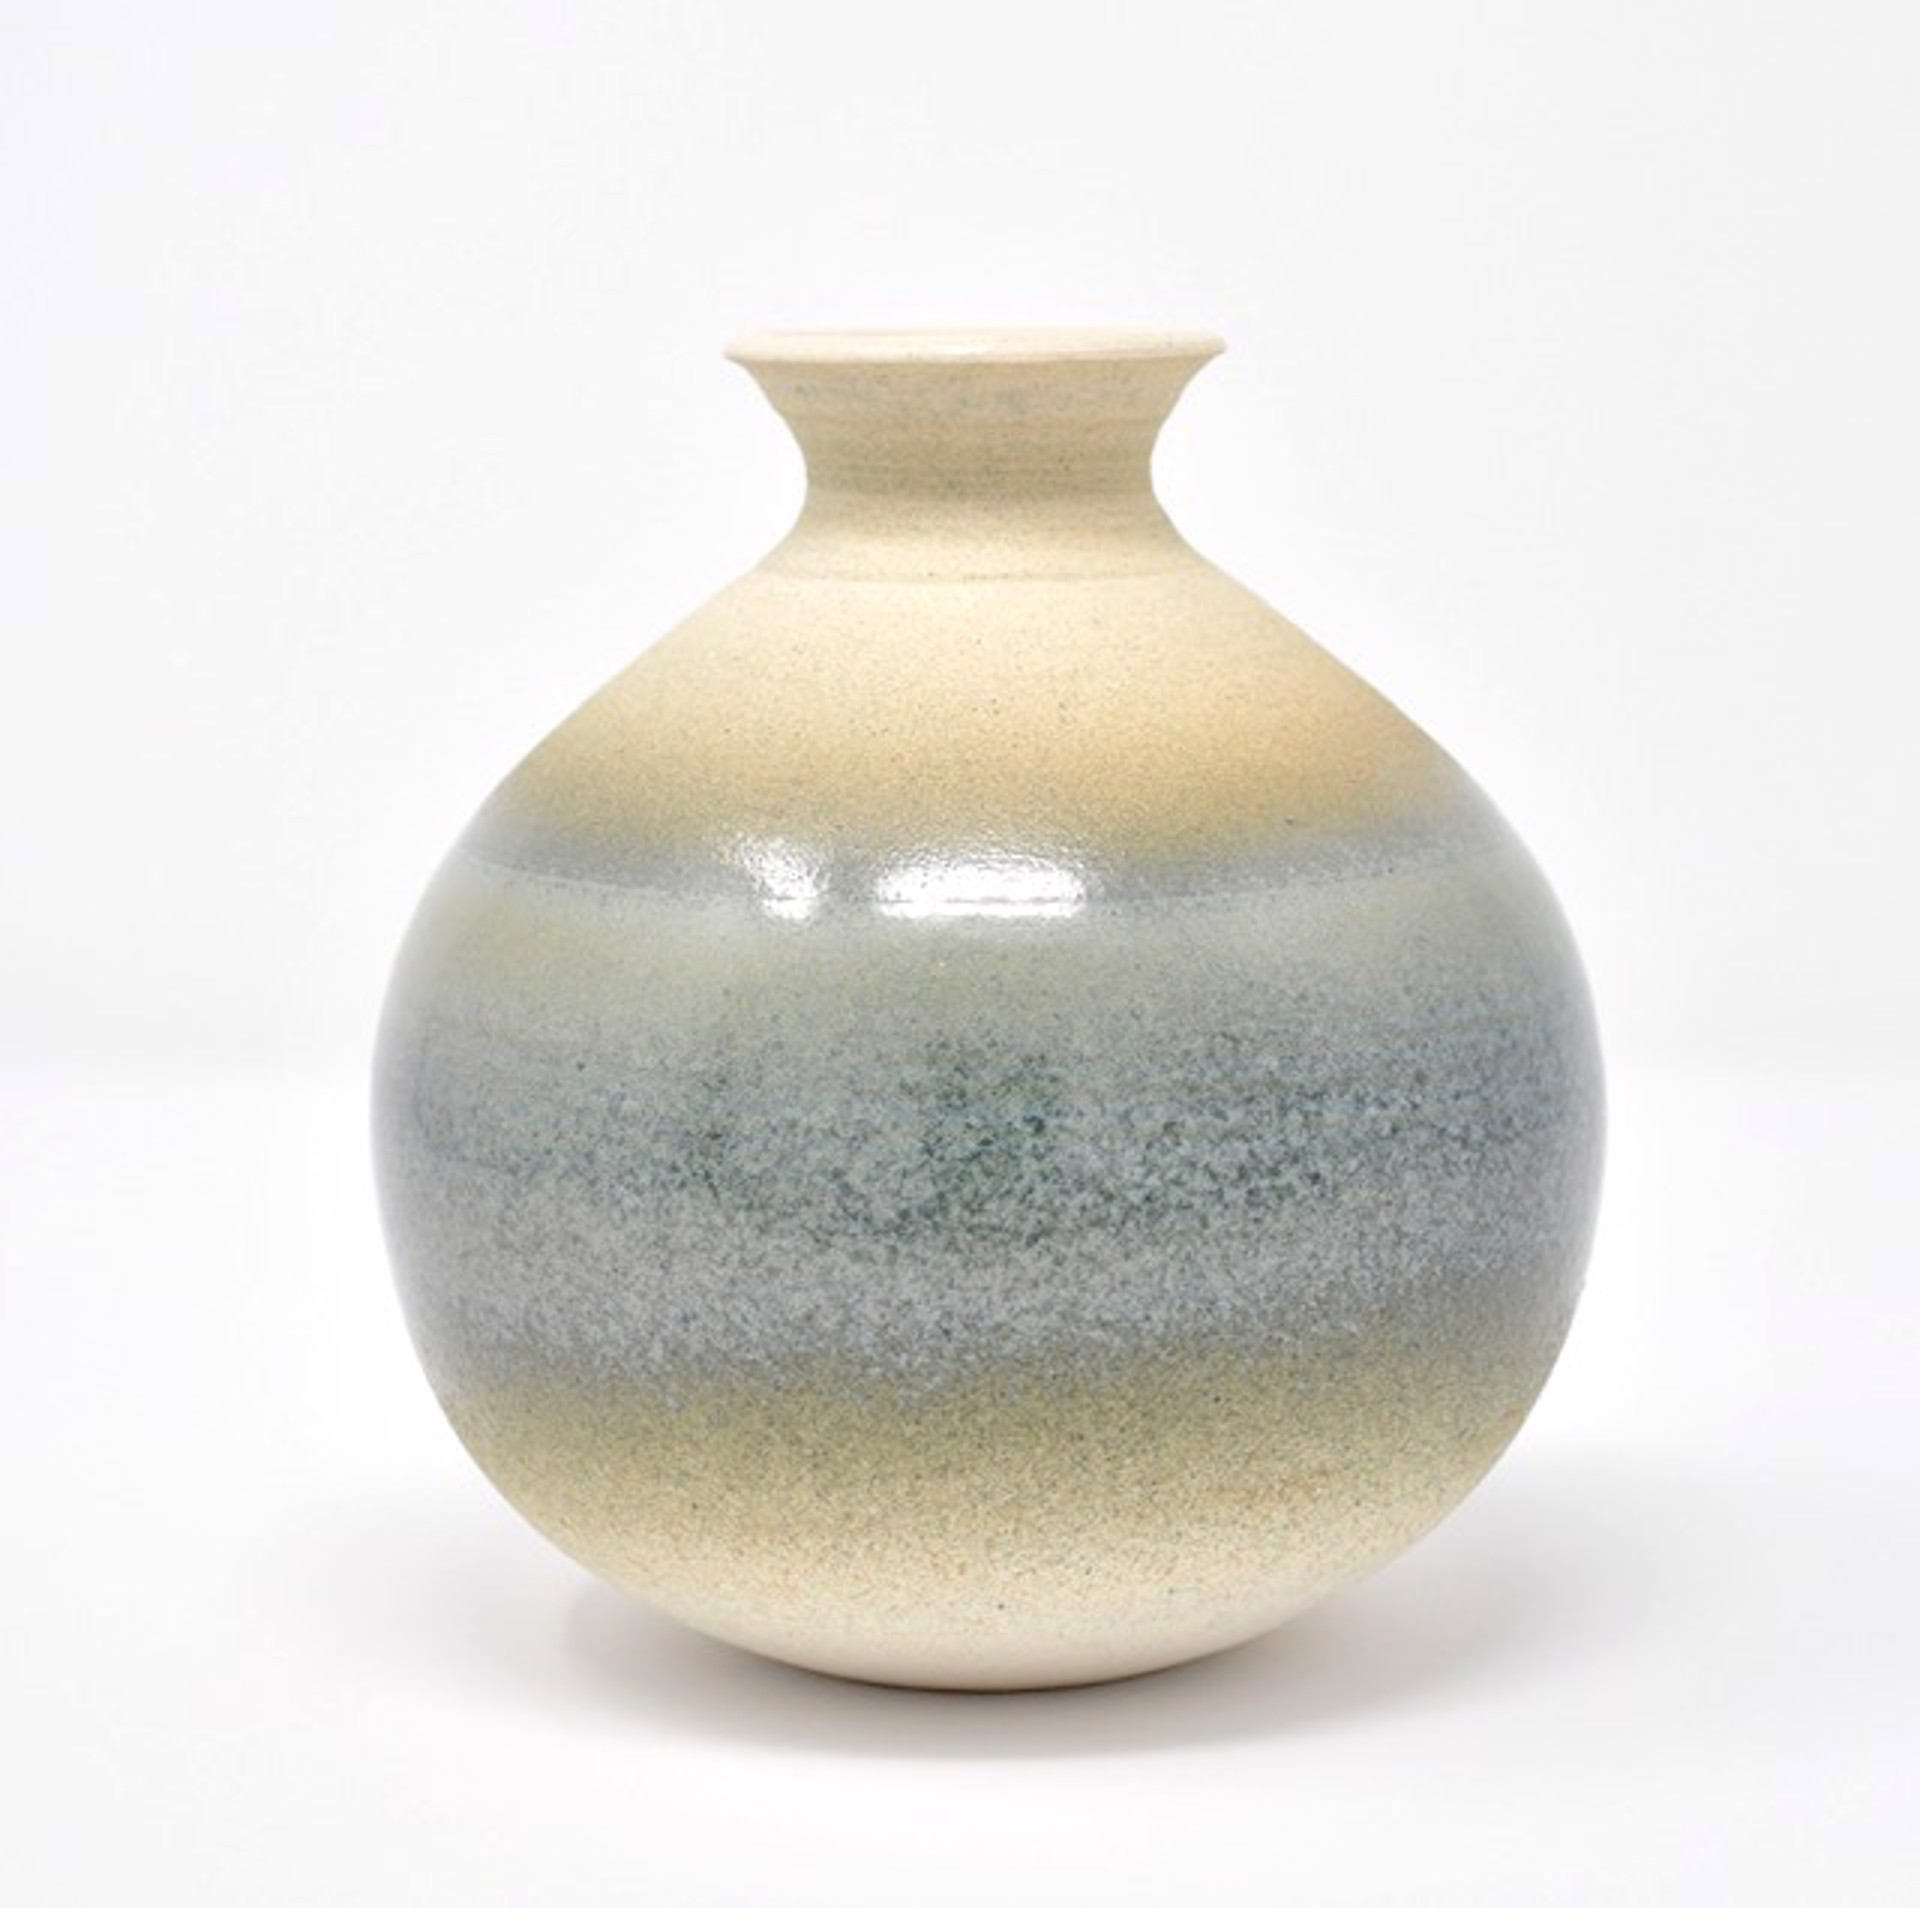 Vase 4 by Heather Bradley